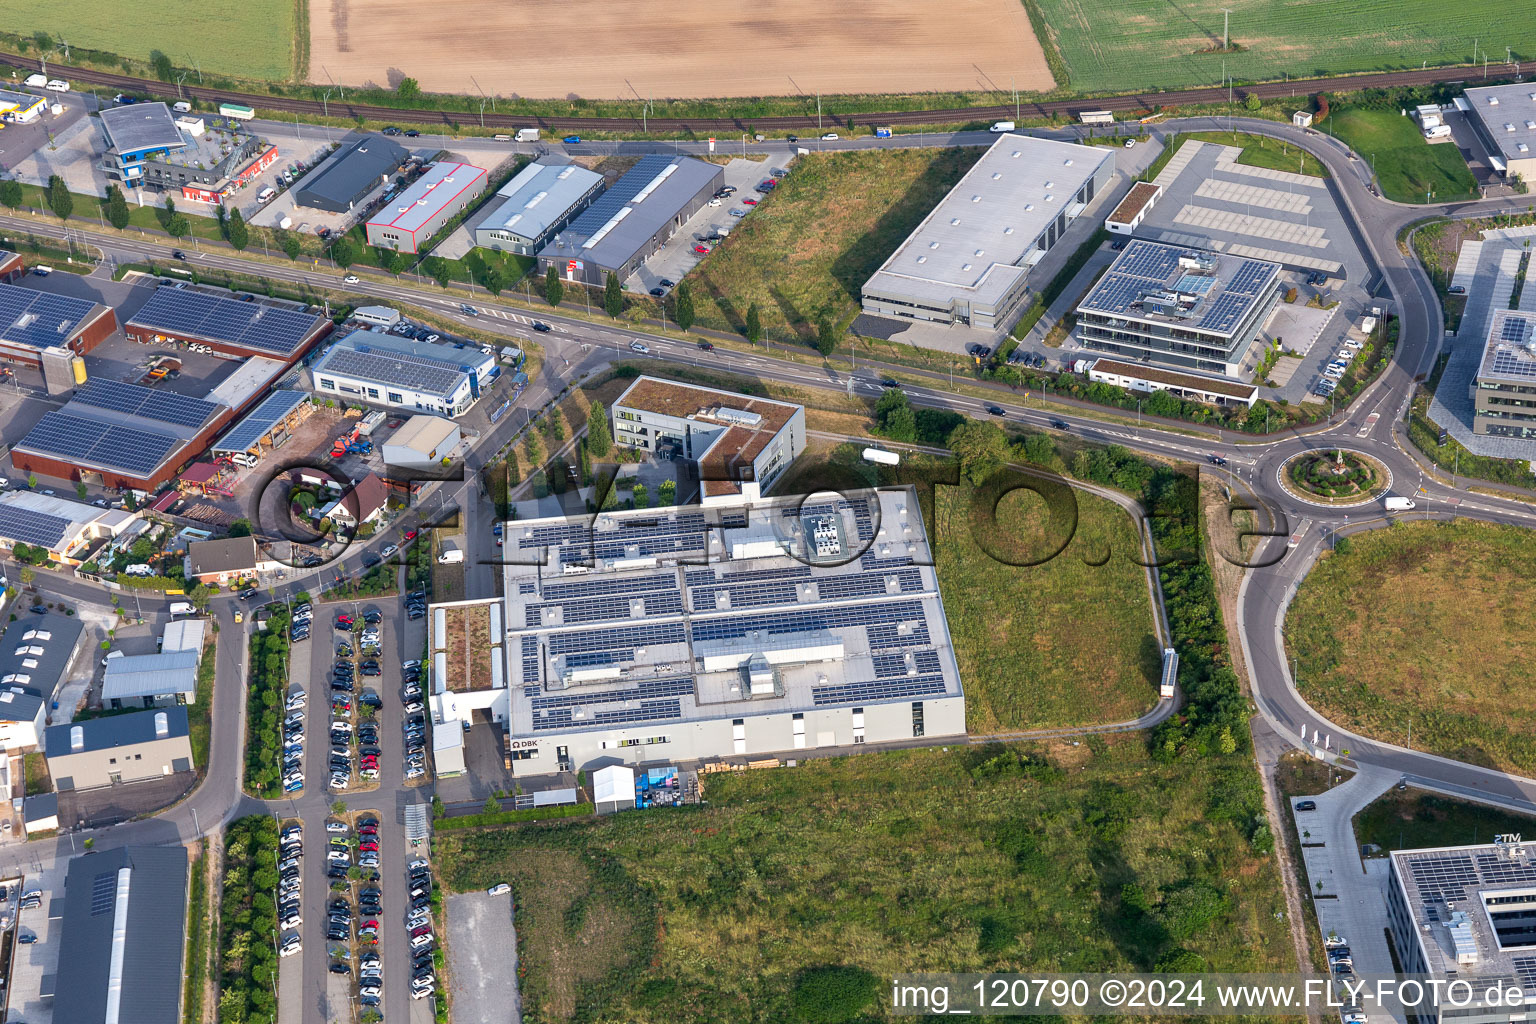 Vue aérienne de Zone industrielle et commerciale nord avec ITK Engineering GmbH, DBK David + Baader à Rülzheim dans le département Rhénanie-Palatinat, Allemagne